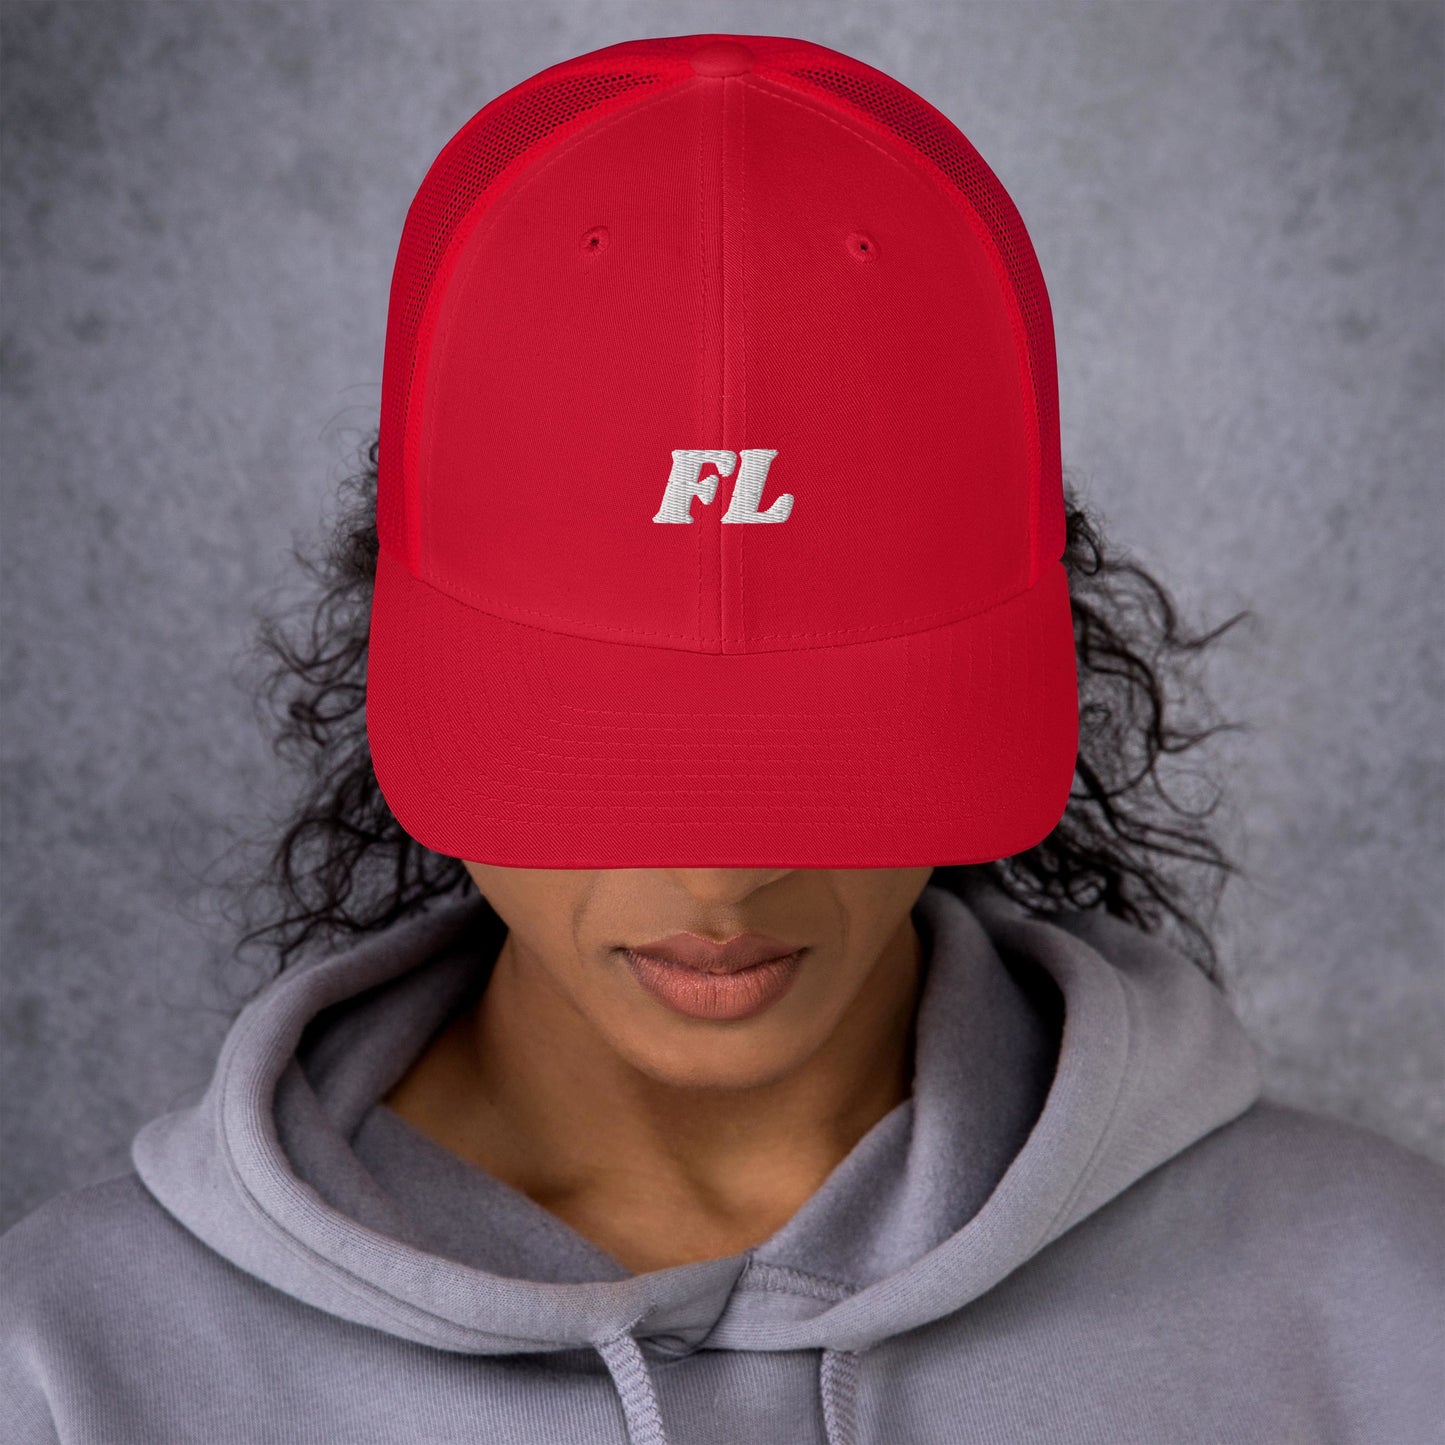 FL-Cap White Label